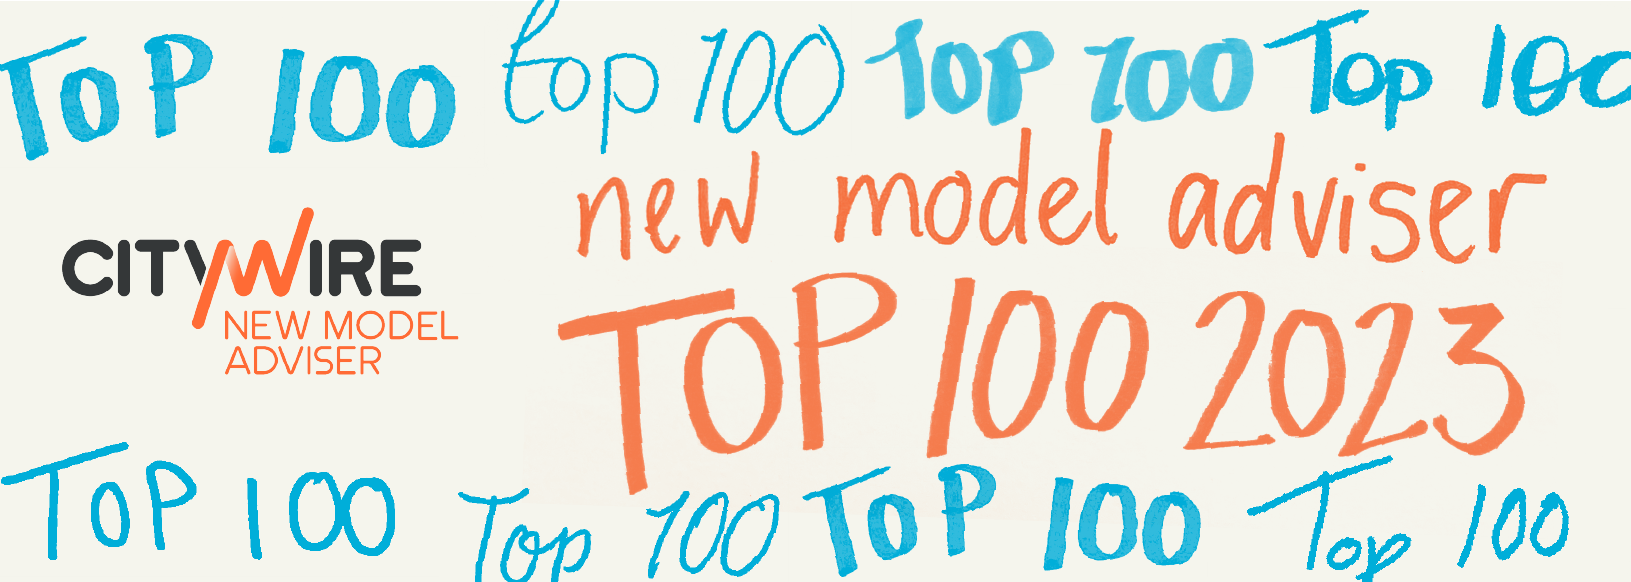 New Model Adviser Top 100